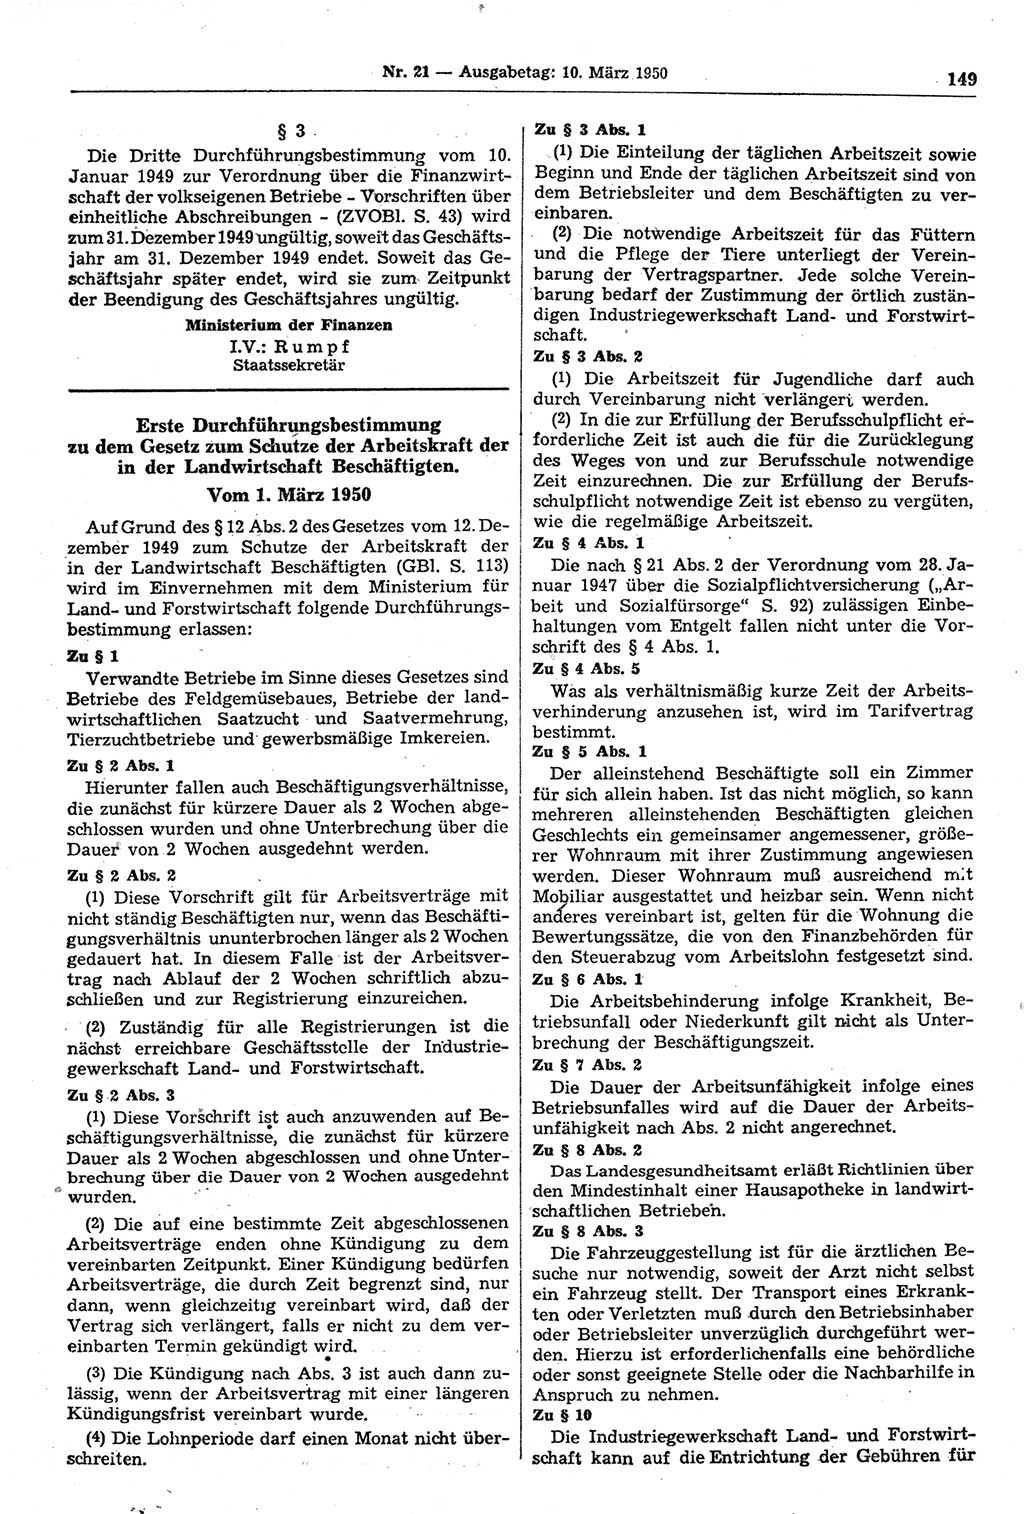 Gesetzblatt (GBl.) der Deutschen Demokratischen Republik (DDR) 1950, Seite 149 (GBl. DDR 1950, S. 149)